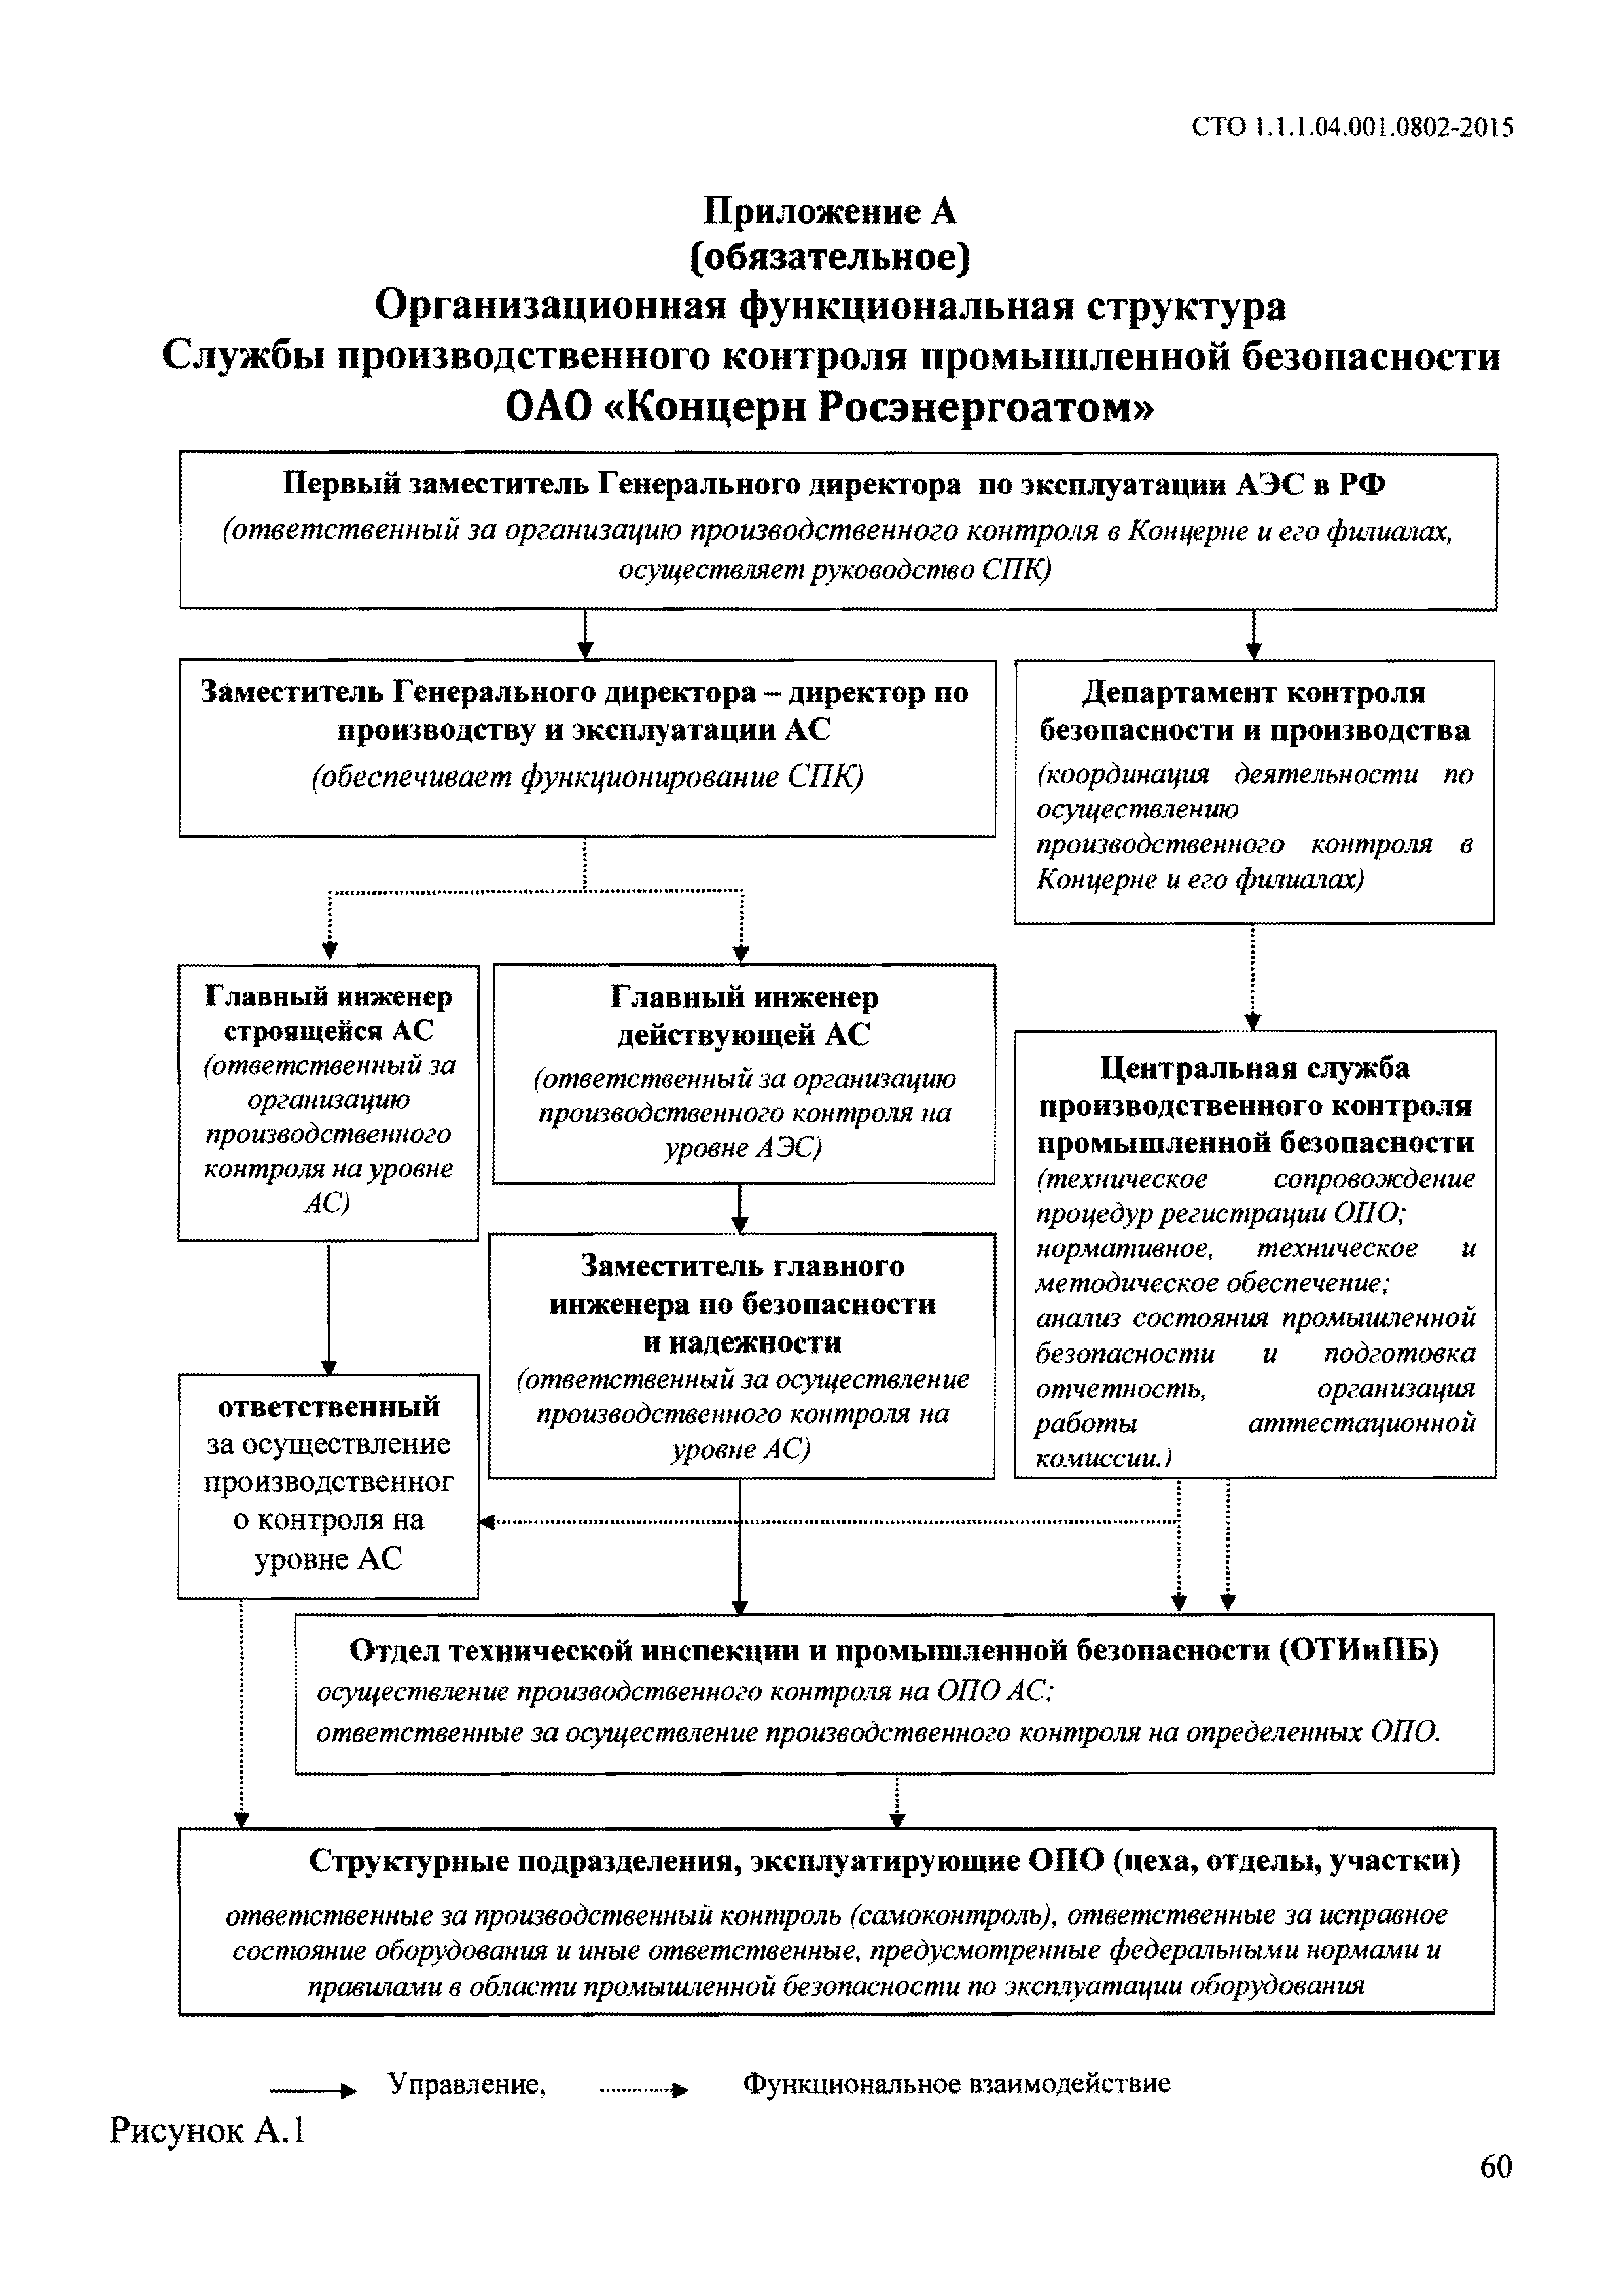 Структура производственного контроля на опо. Служба производственного контроля организации